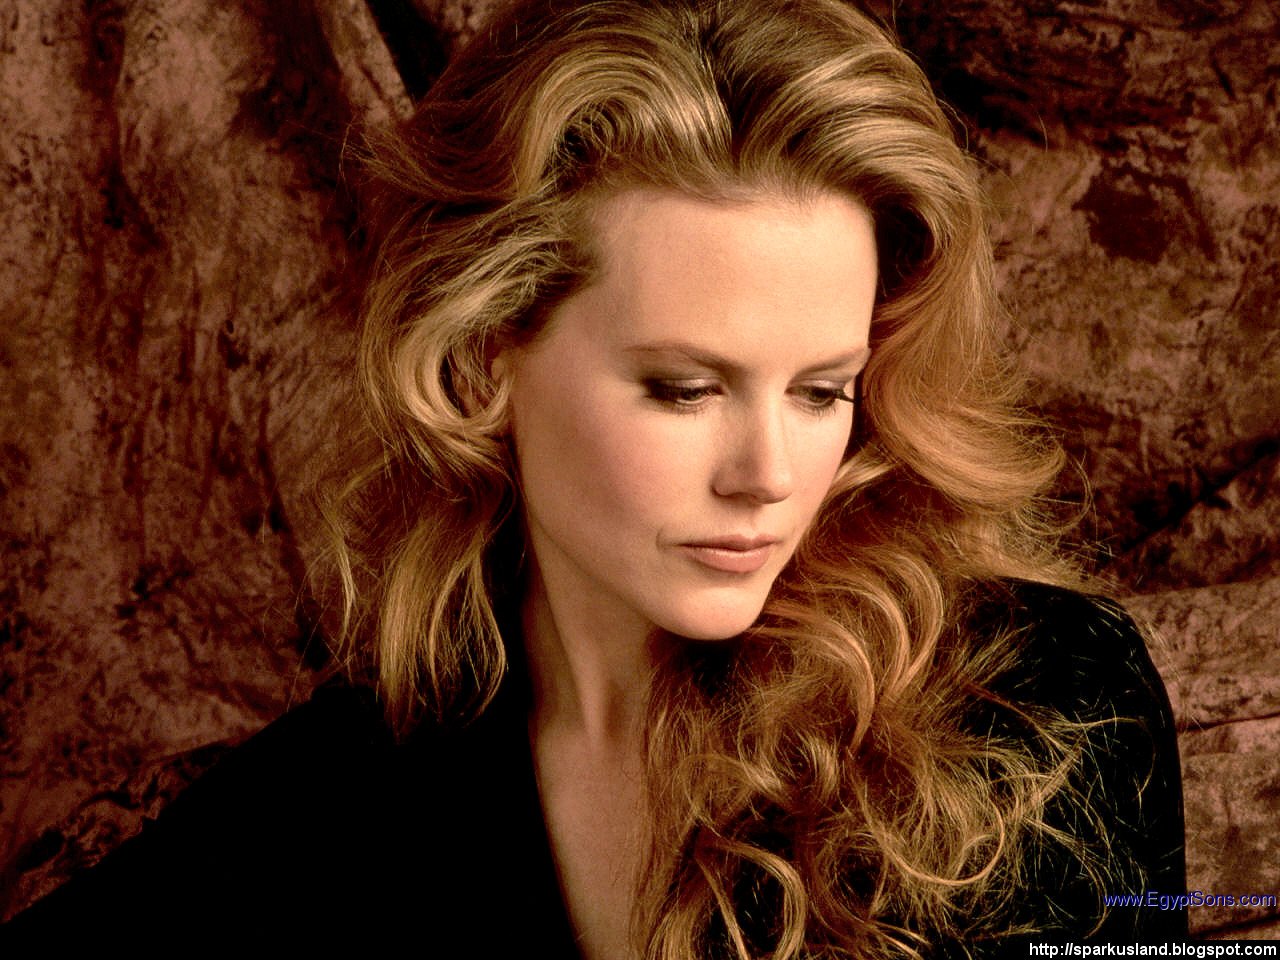 Nicole Kidman in  Eyes Wide Shut